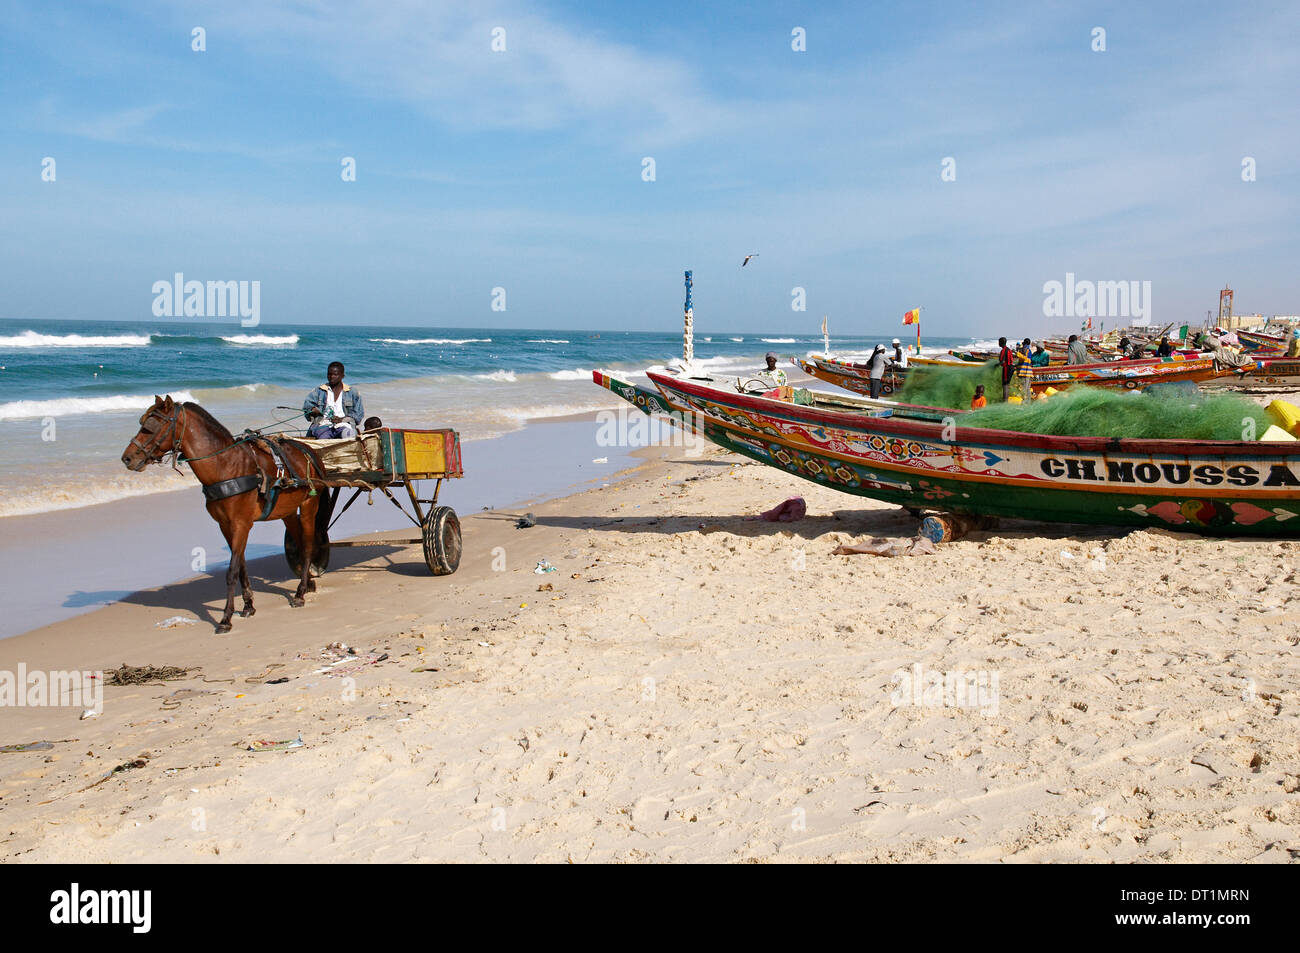 Angelboote/Fischerboote am Strand, Stadt von Saint-Louis, Senegal, Westafrika, Afrika Stockfoto